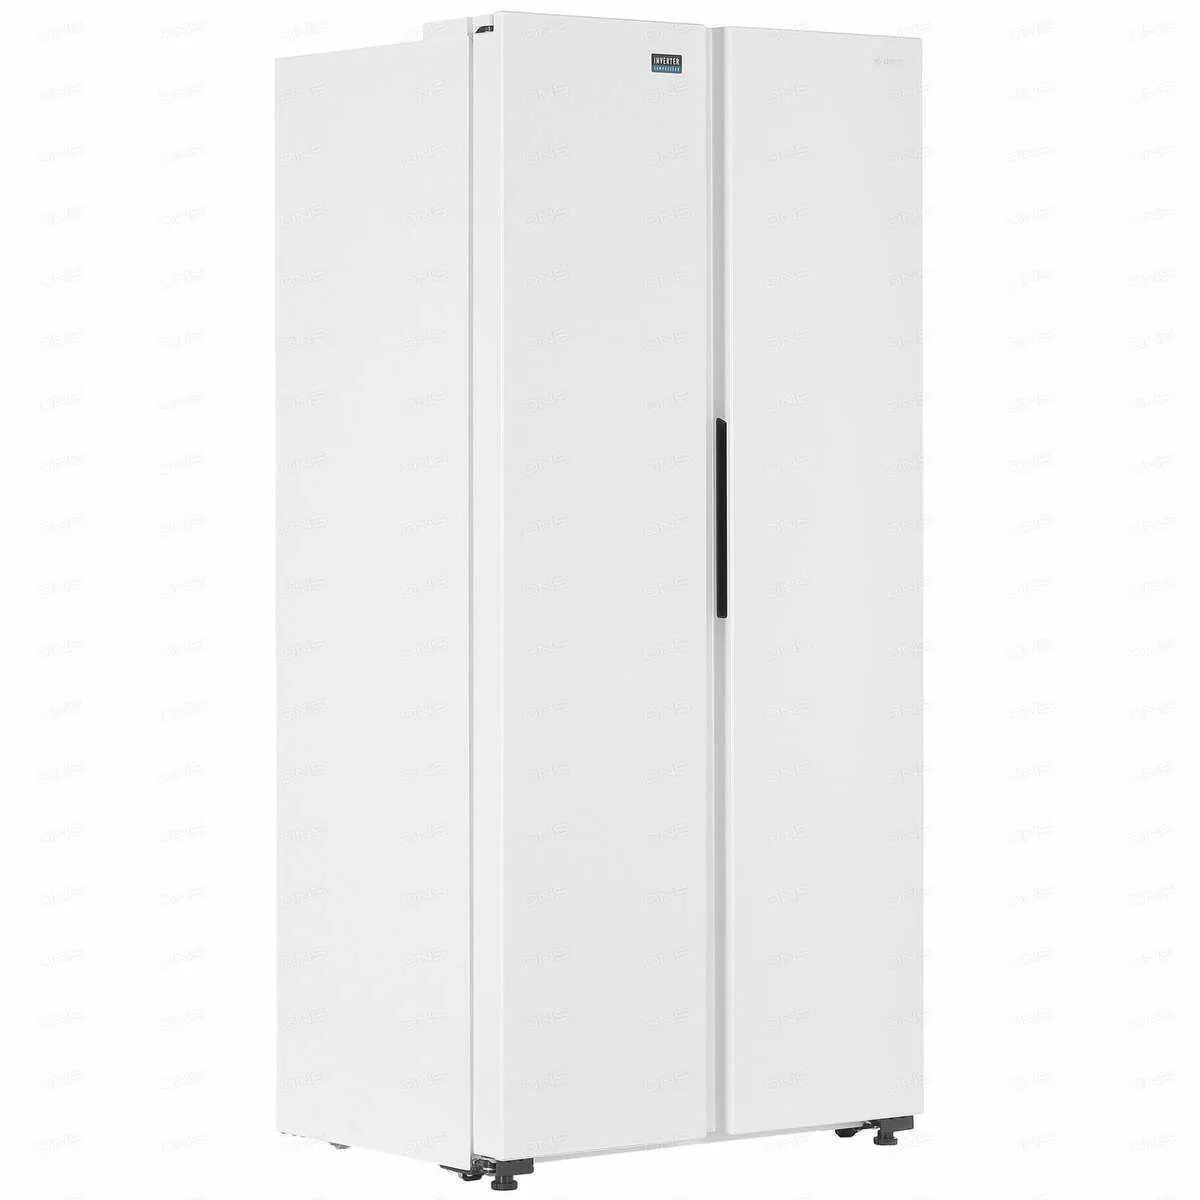 Холодильник Side by Side DEXP sbs440ama белый. Холодильник Side by Side DEXP sbs460amg серебристый. Холодильник Side by Side DEXP sbs455amg белый. Холодильник DEXP sbs440ama. Dexp side by side